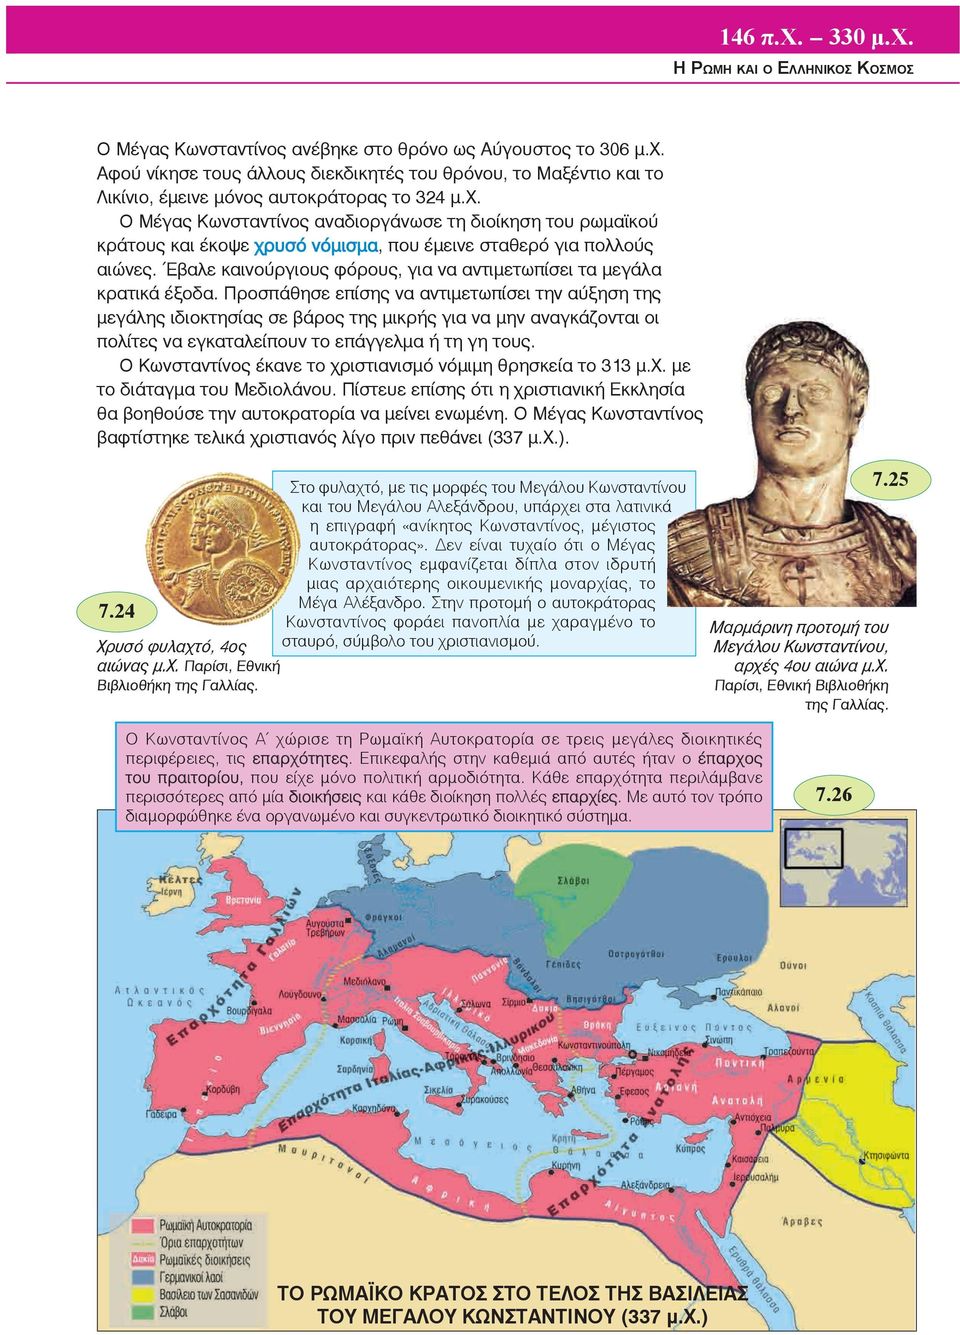 Ο Μέγας Κωνσταντίνος αναδιοργάνωσε τη διοίκηση του ρωμαϊκού κράτους και έκοψε χρυσό νόμισμα, που έμεινε σταθερό για πολλούς αιώνες.